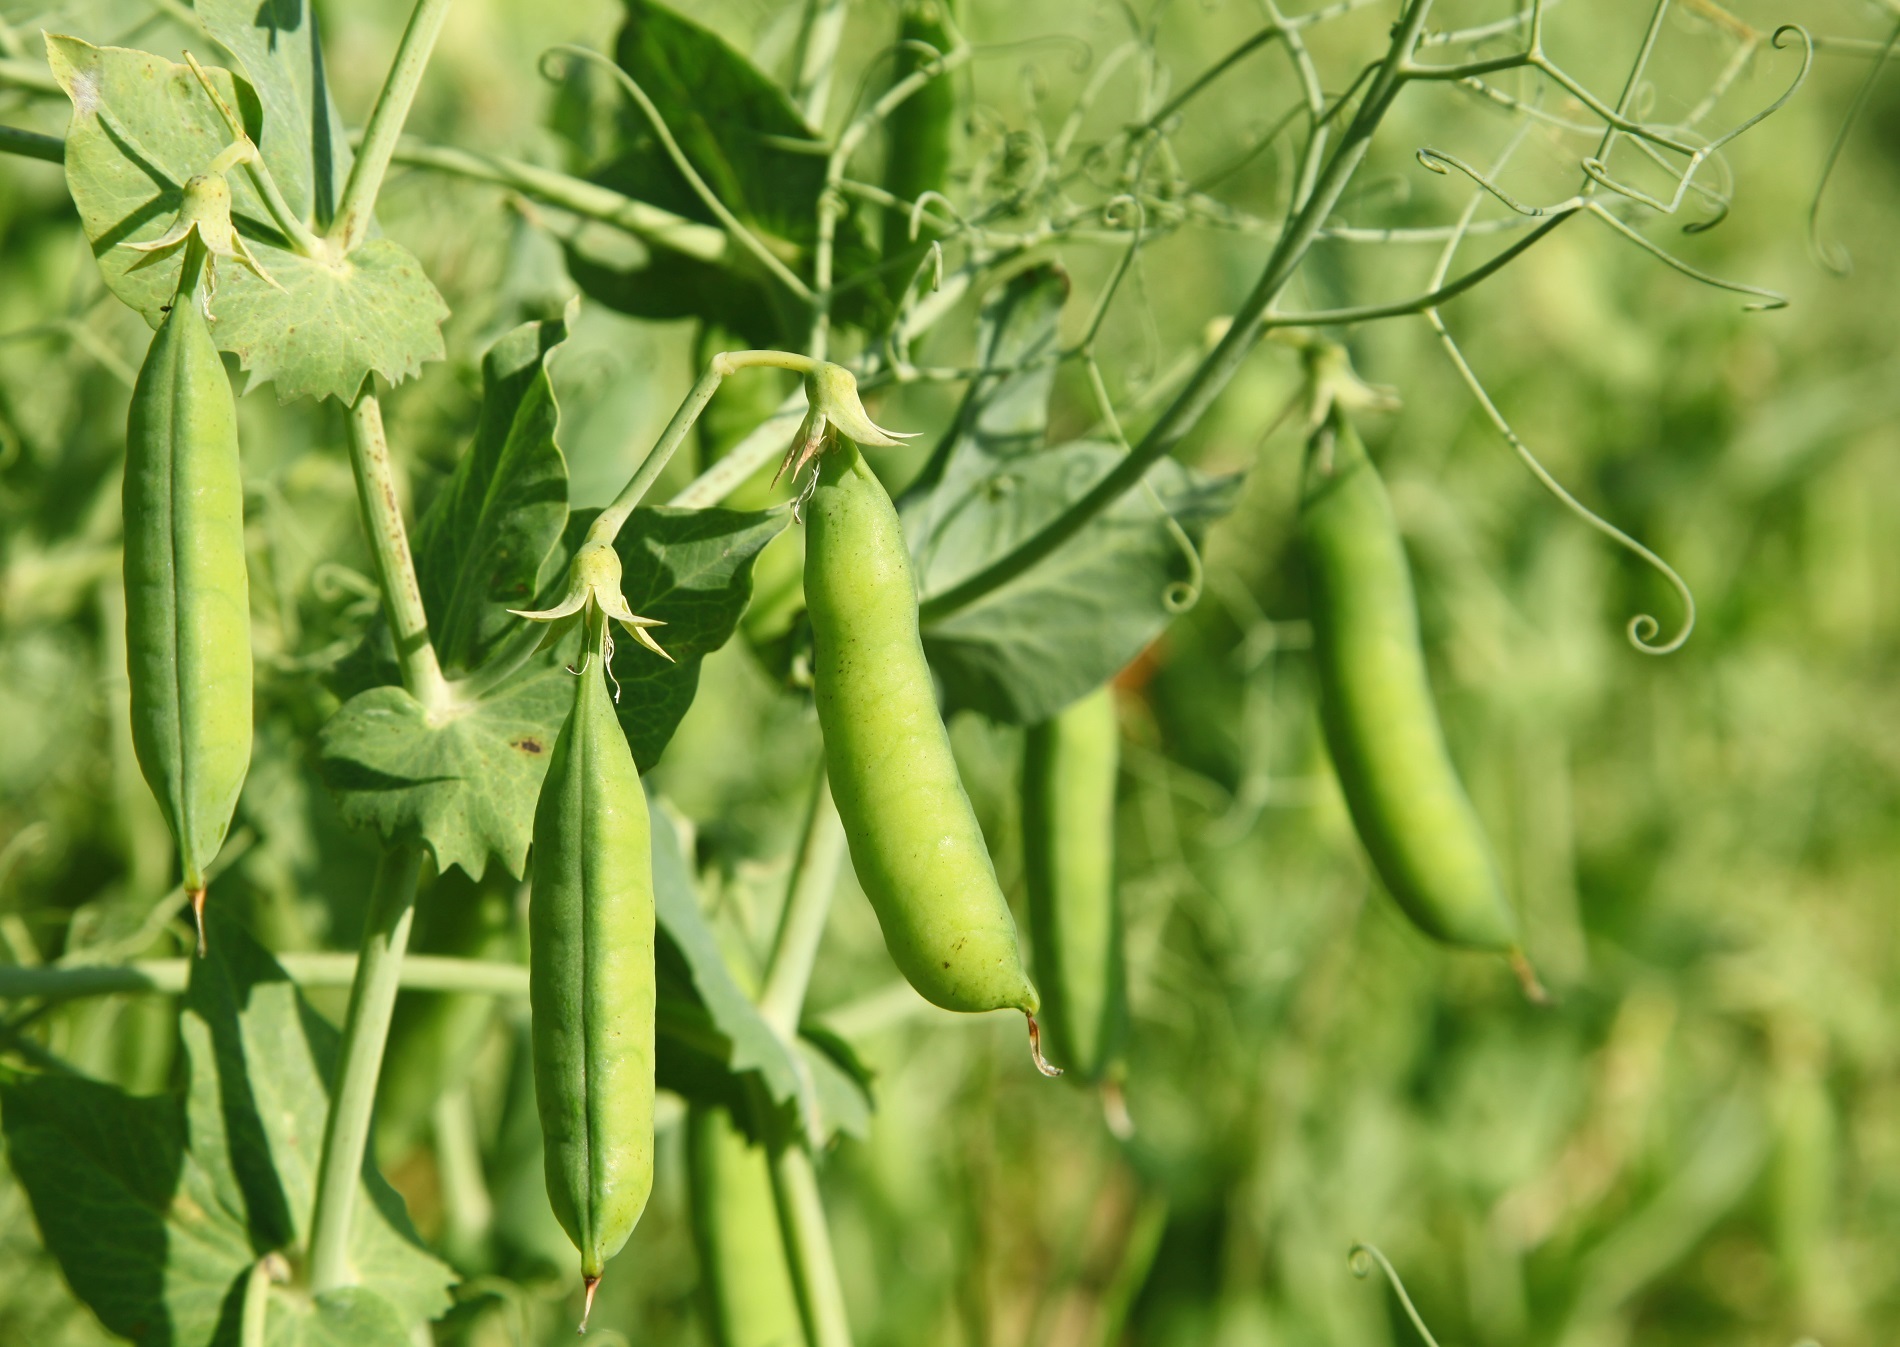 Familias de cultivos y necesidades de sanidad vegetal: leguminosas